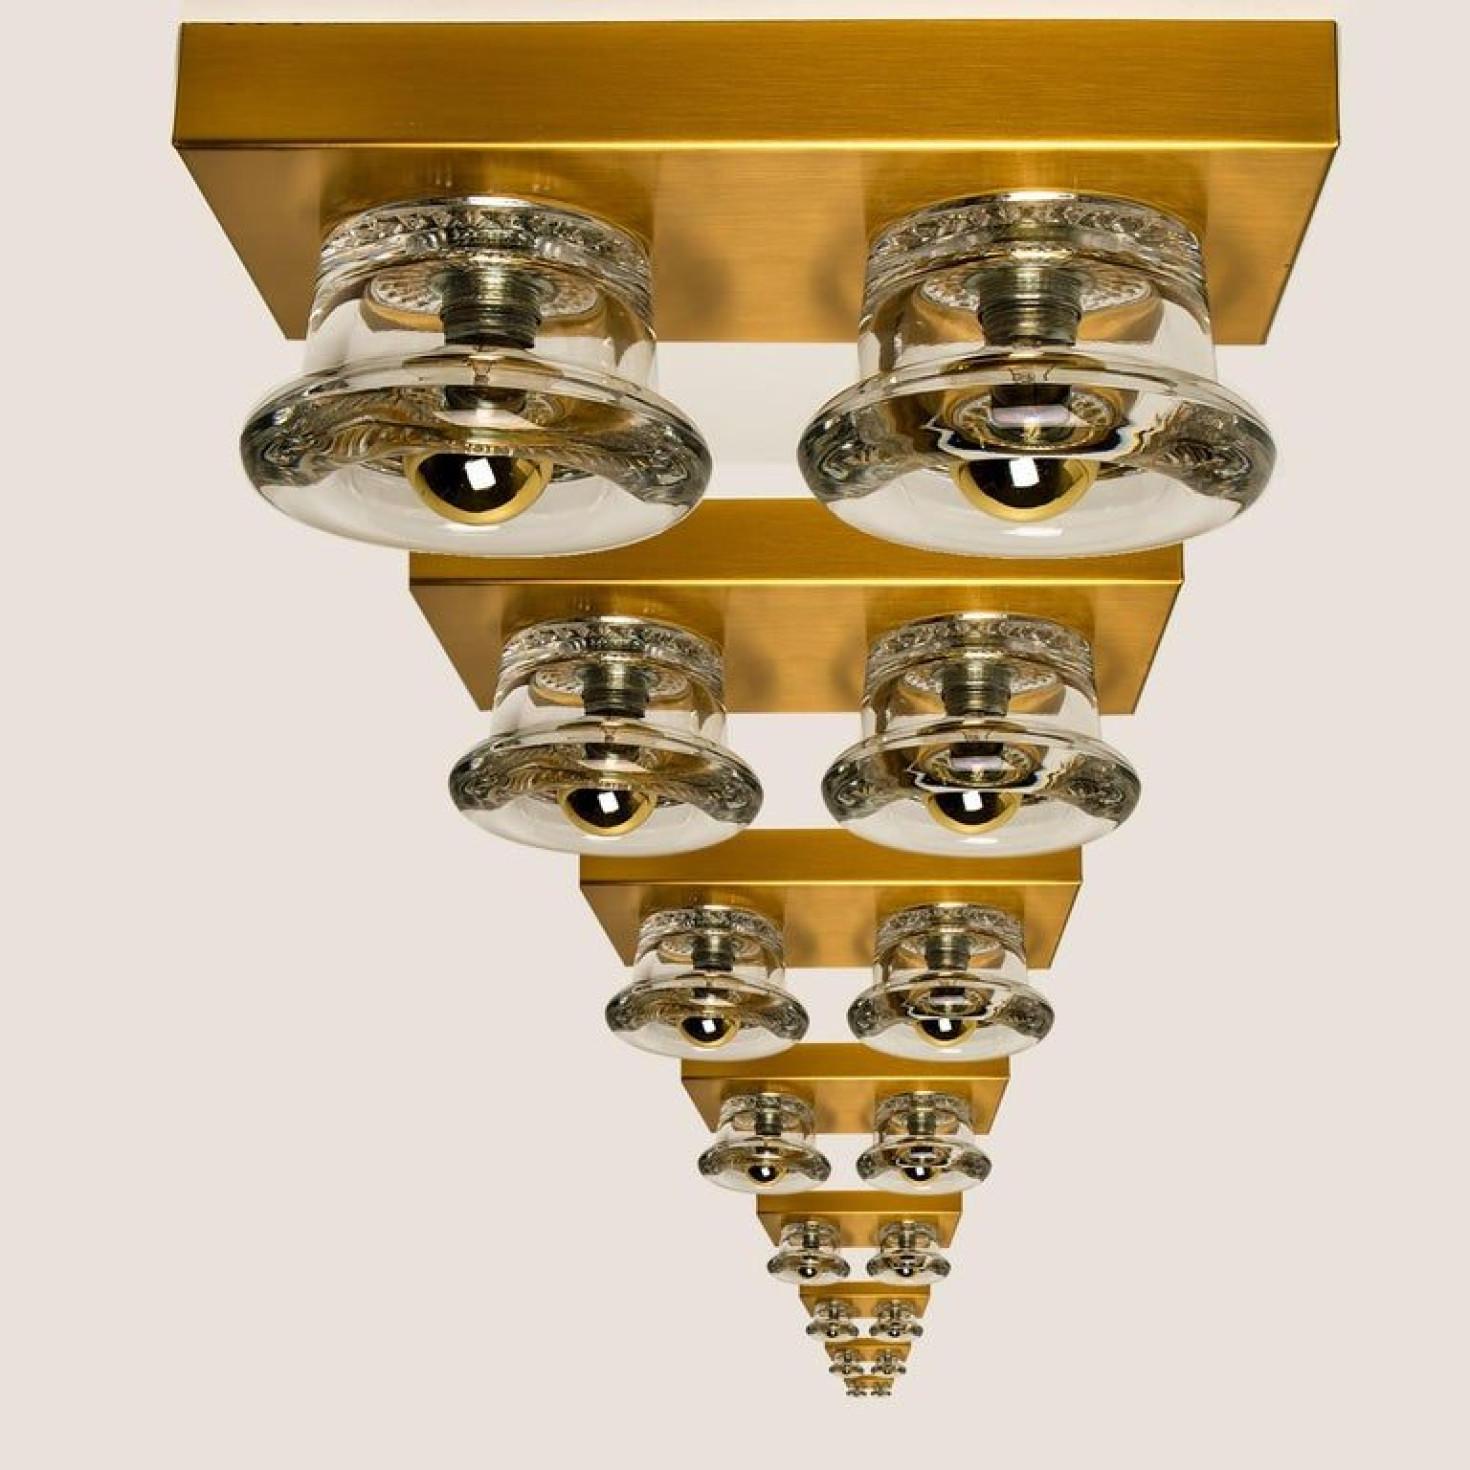 1 der 8 originalen Glaswandleuchter oder Unterputzleuchten Cosack, Deutschland, 1970er Jahre

Originelle modernistische Wandleuchte aus den 1970er Jahren mit vier Lichtelementen aus Glas. Diese Leuchte wurde von Cosack Lights entworfen und